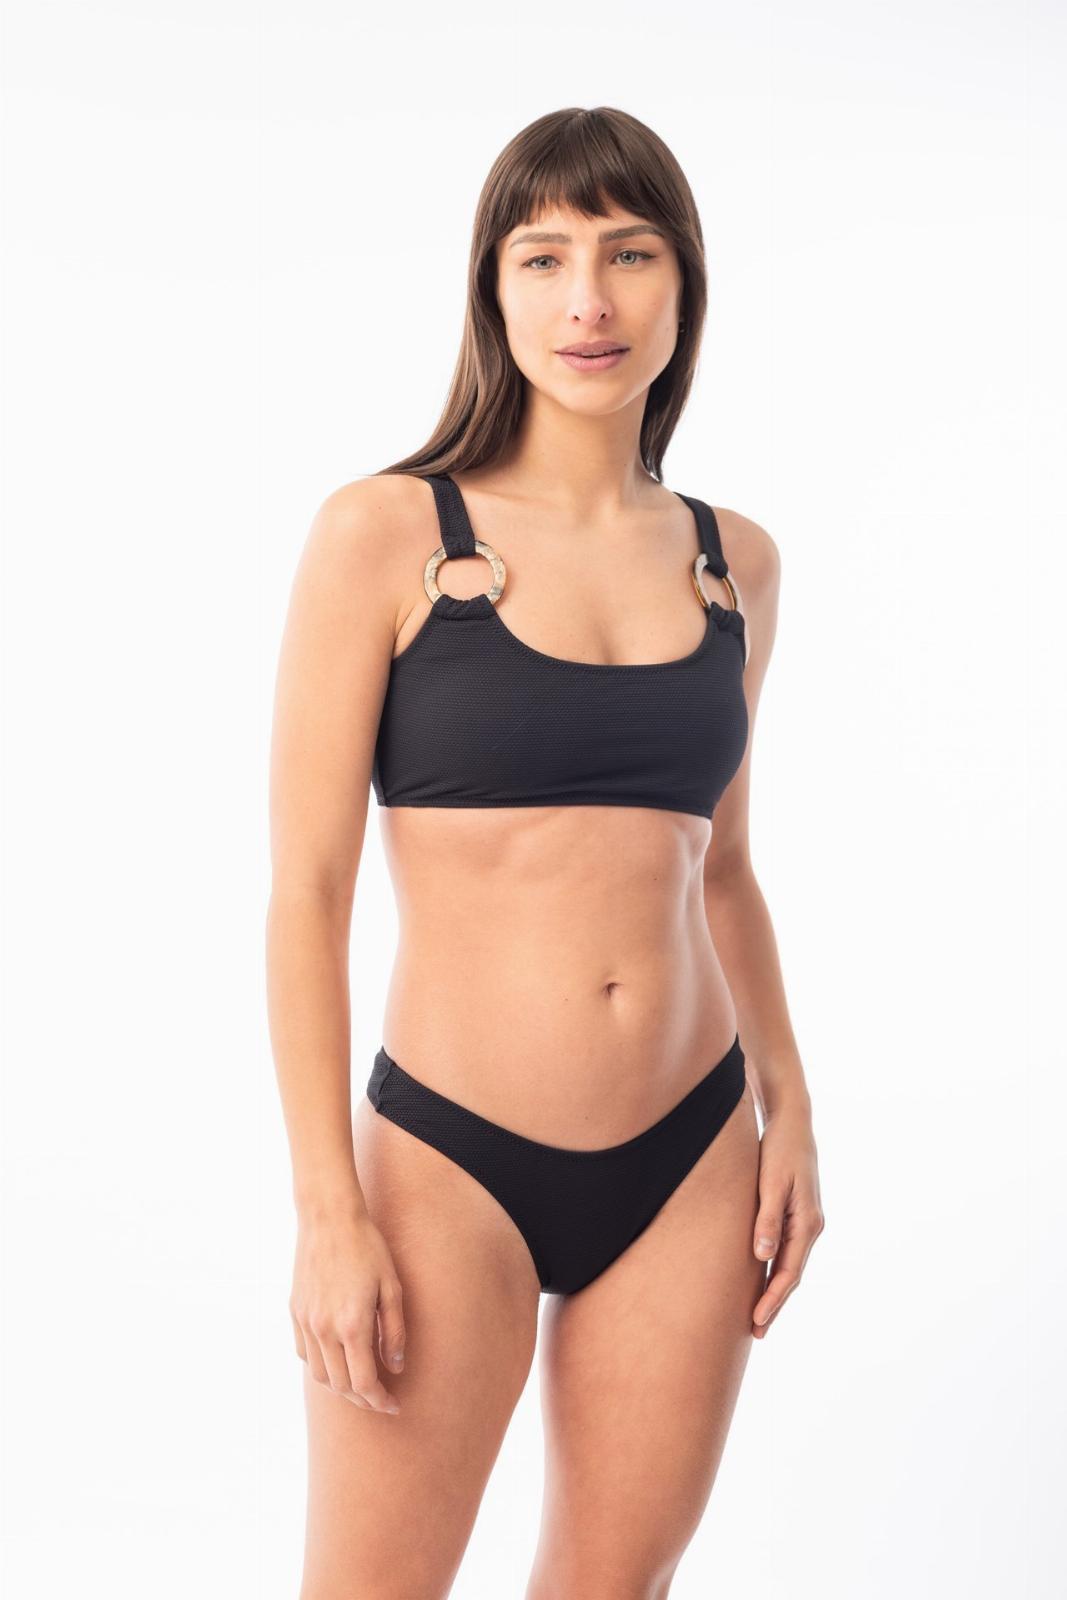 Paraiso- Bikini Top con Argollas negro s